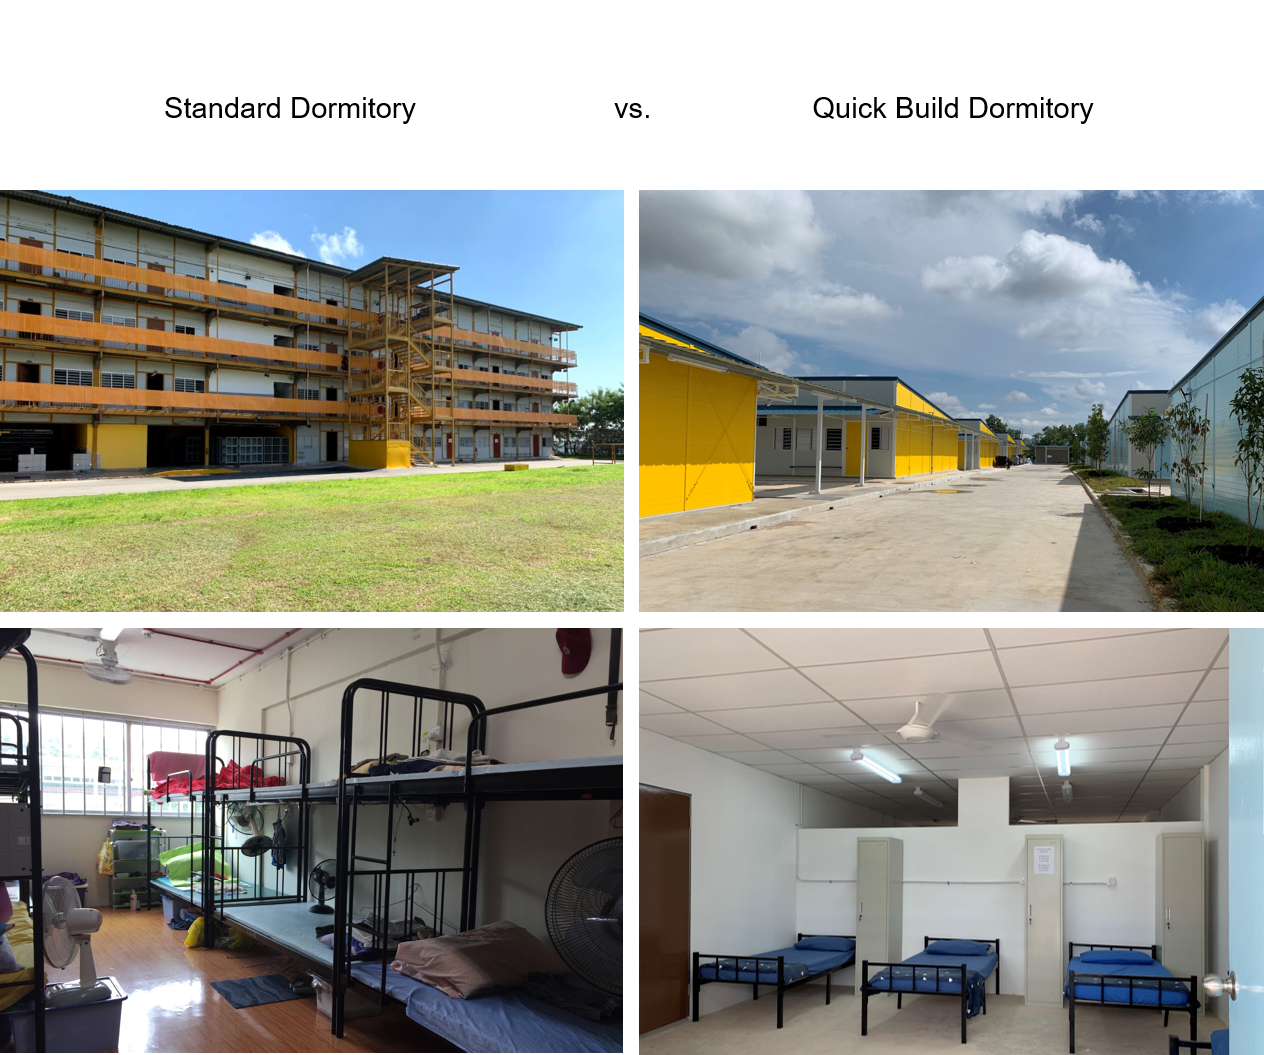 Standard dormitory vs Quick Build dormitory